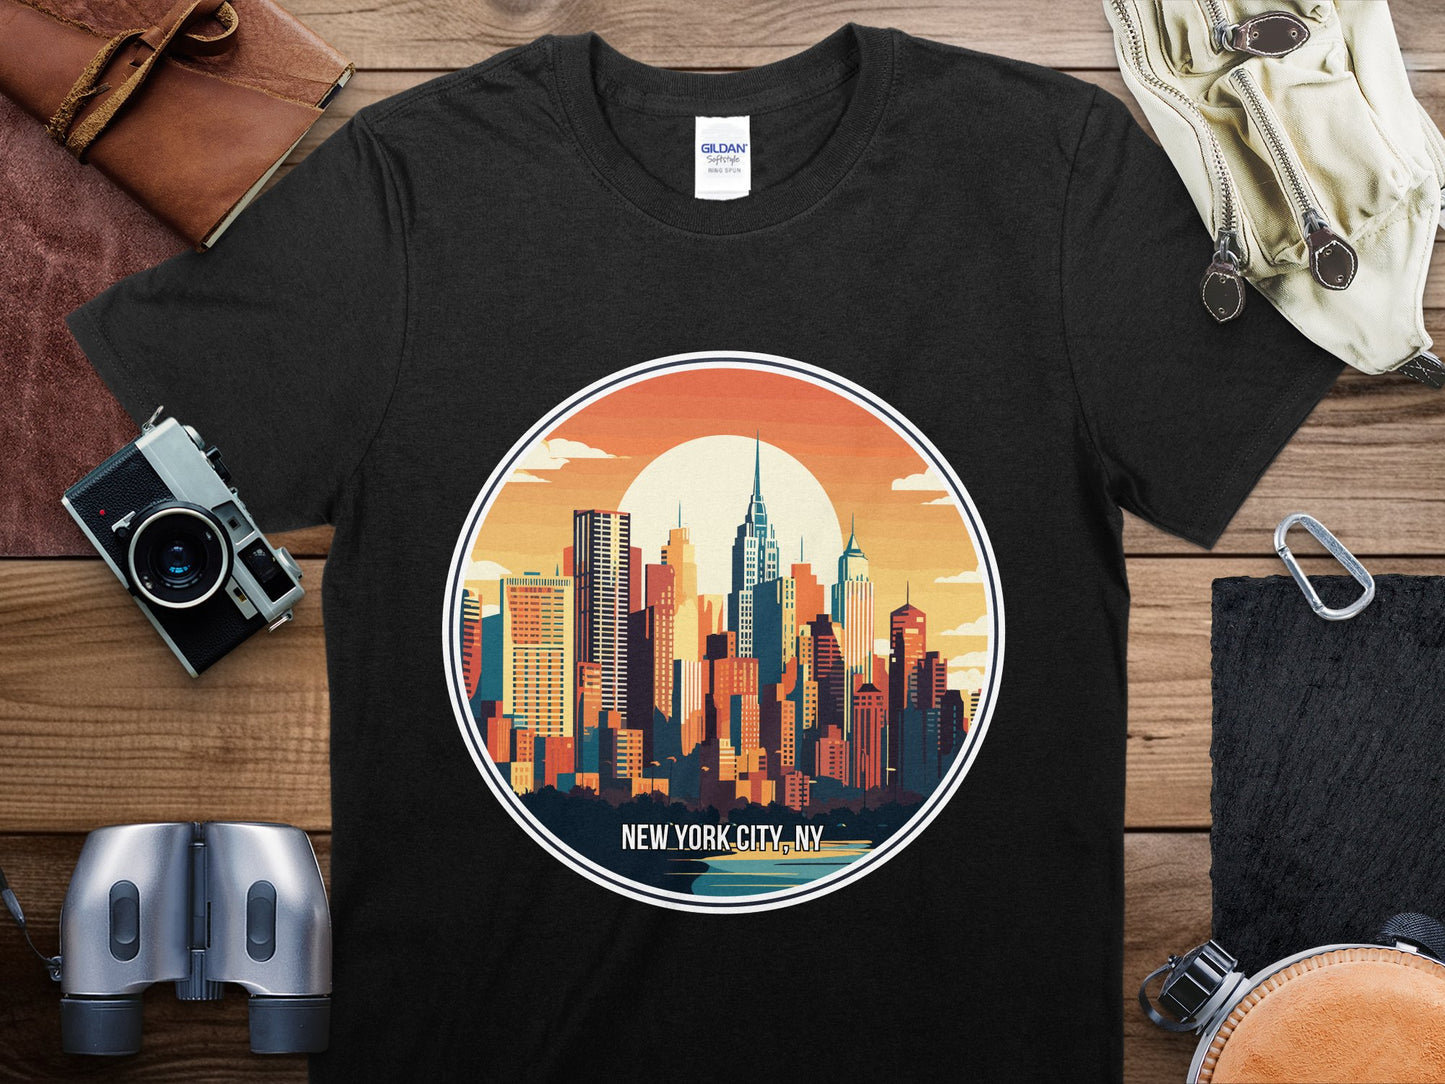 New York City 3 Travel T-Shirt, New York City 3 NYC Shirt